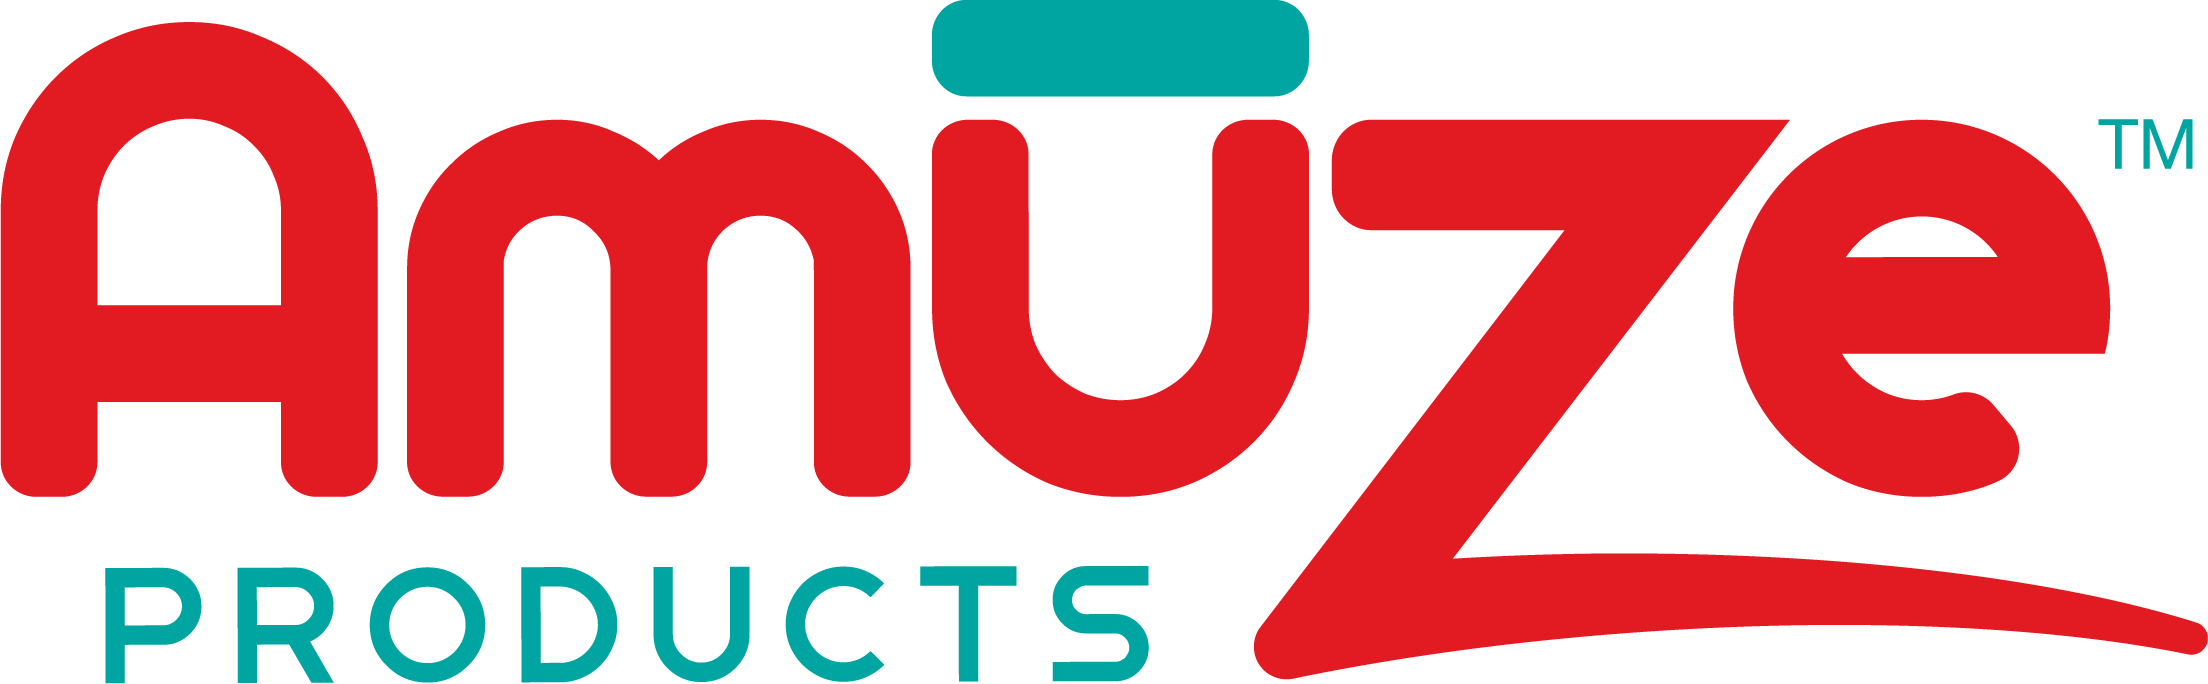 Amuze Products